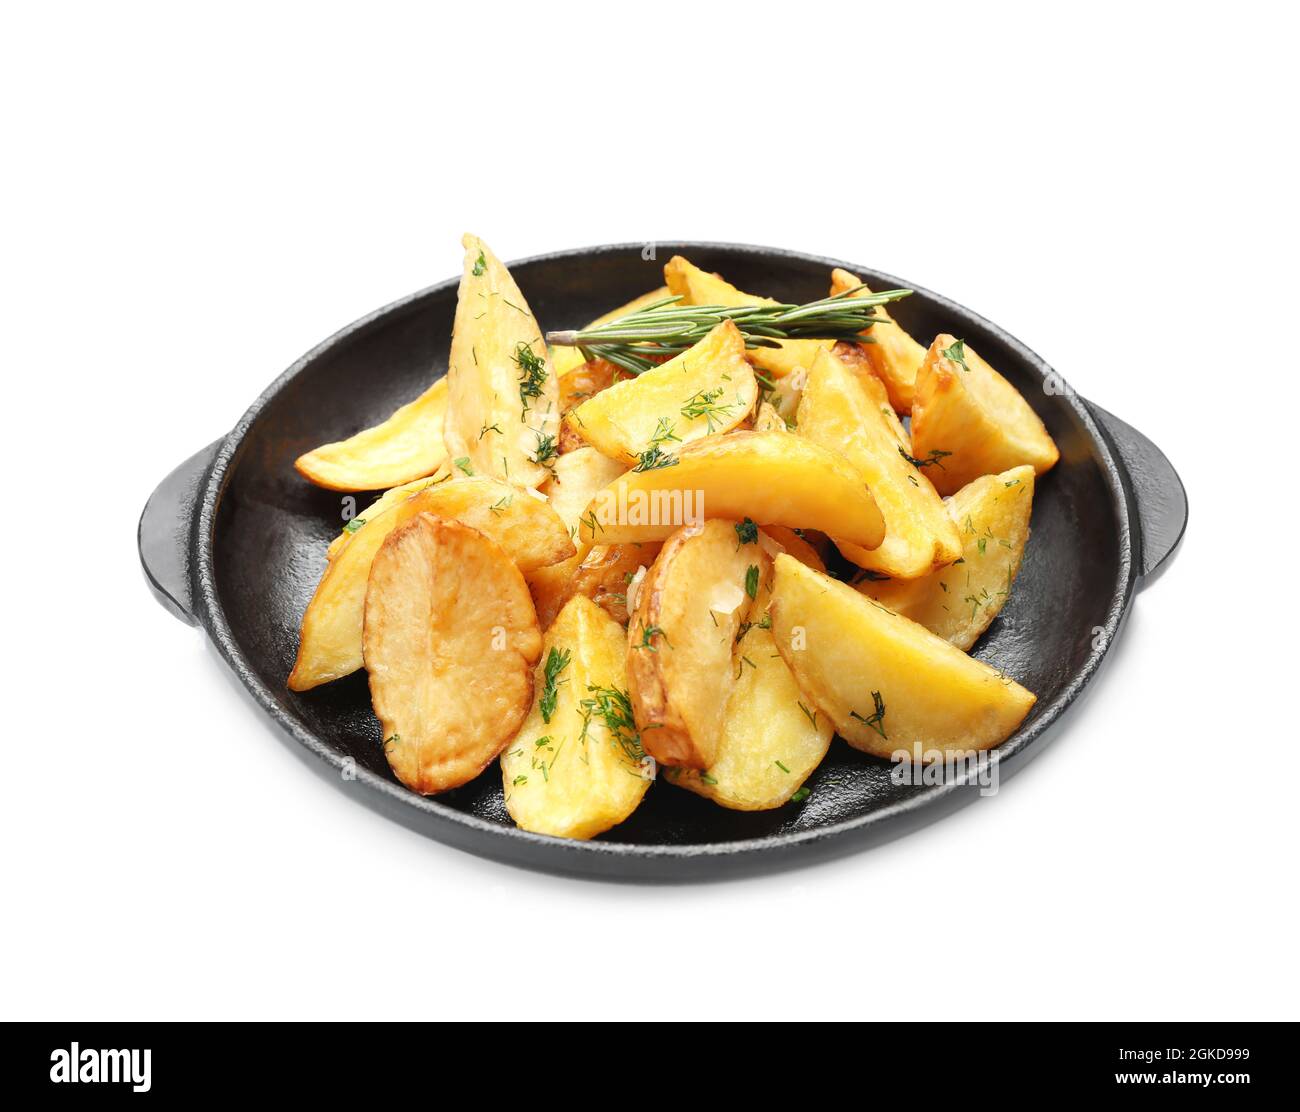 Pfanne mit leckeren Baked Potato Wedges auf weißem Hintergrund  Stockfotografie - Alamy